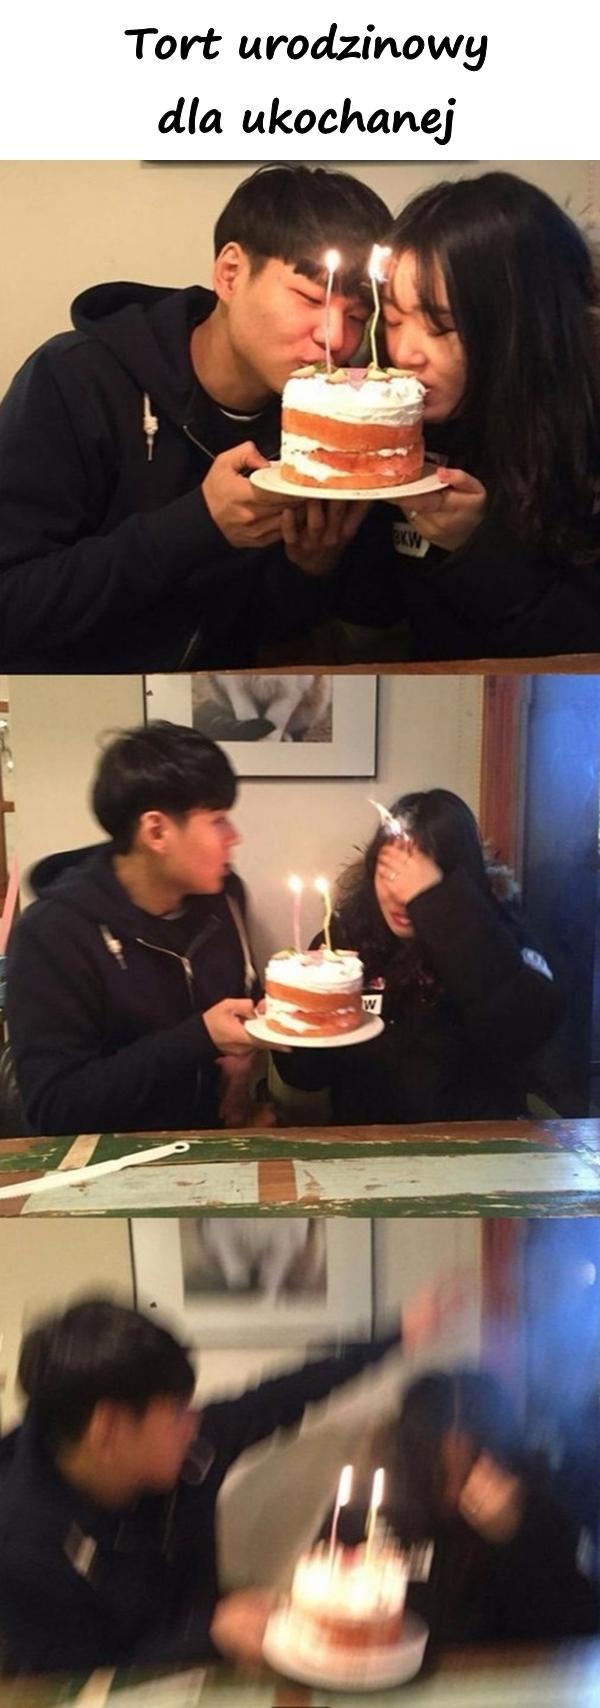 Tort urodzinowy dla ukochanej